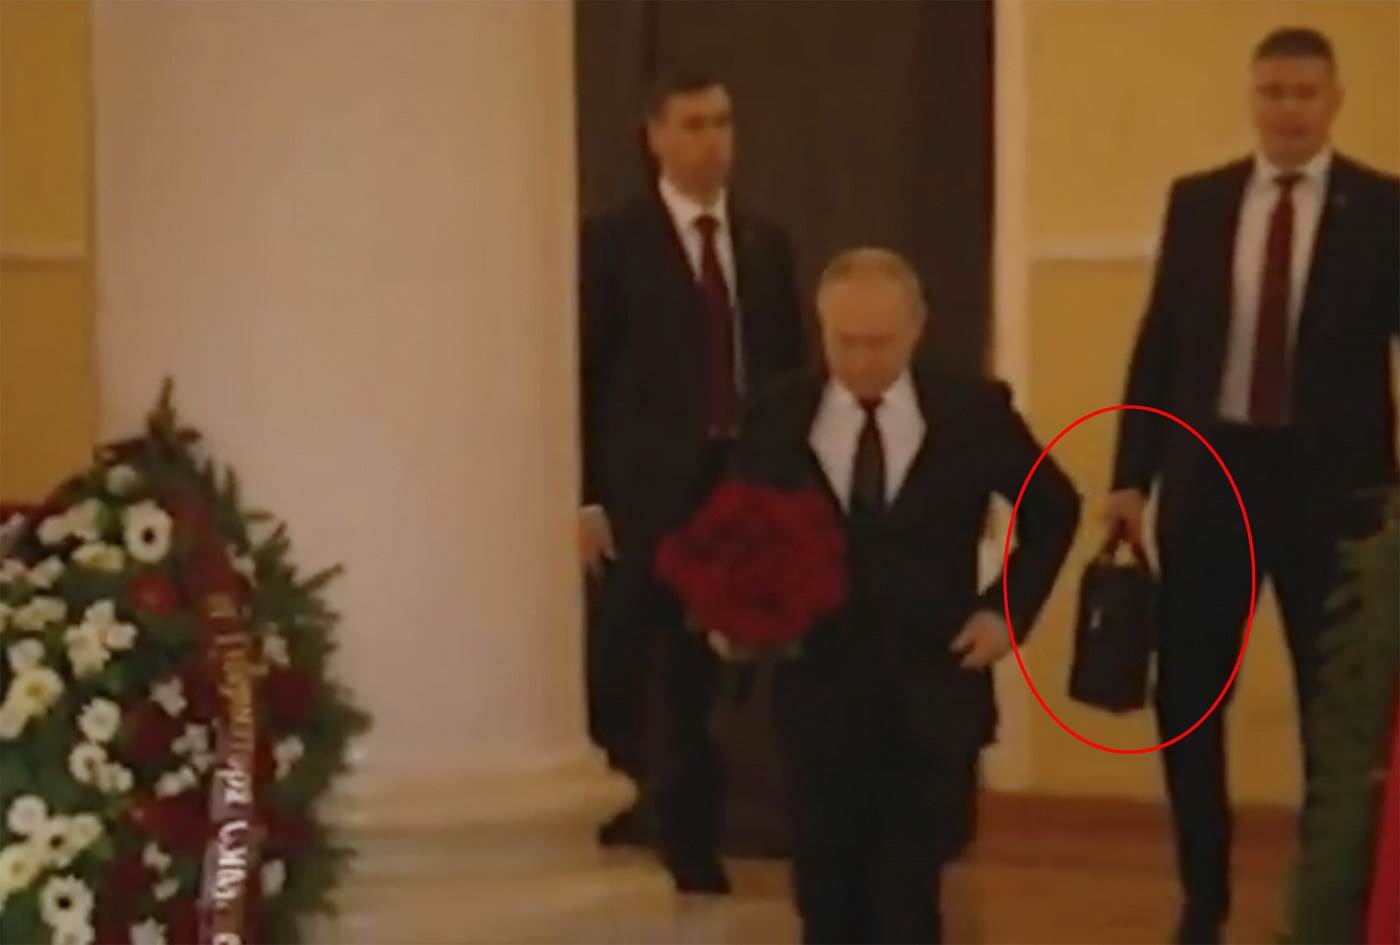  Putinov "nuklearni kofer" video 